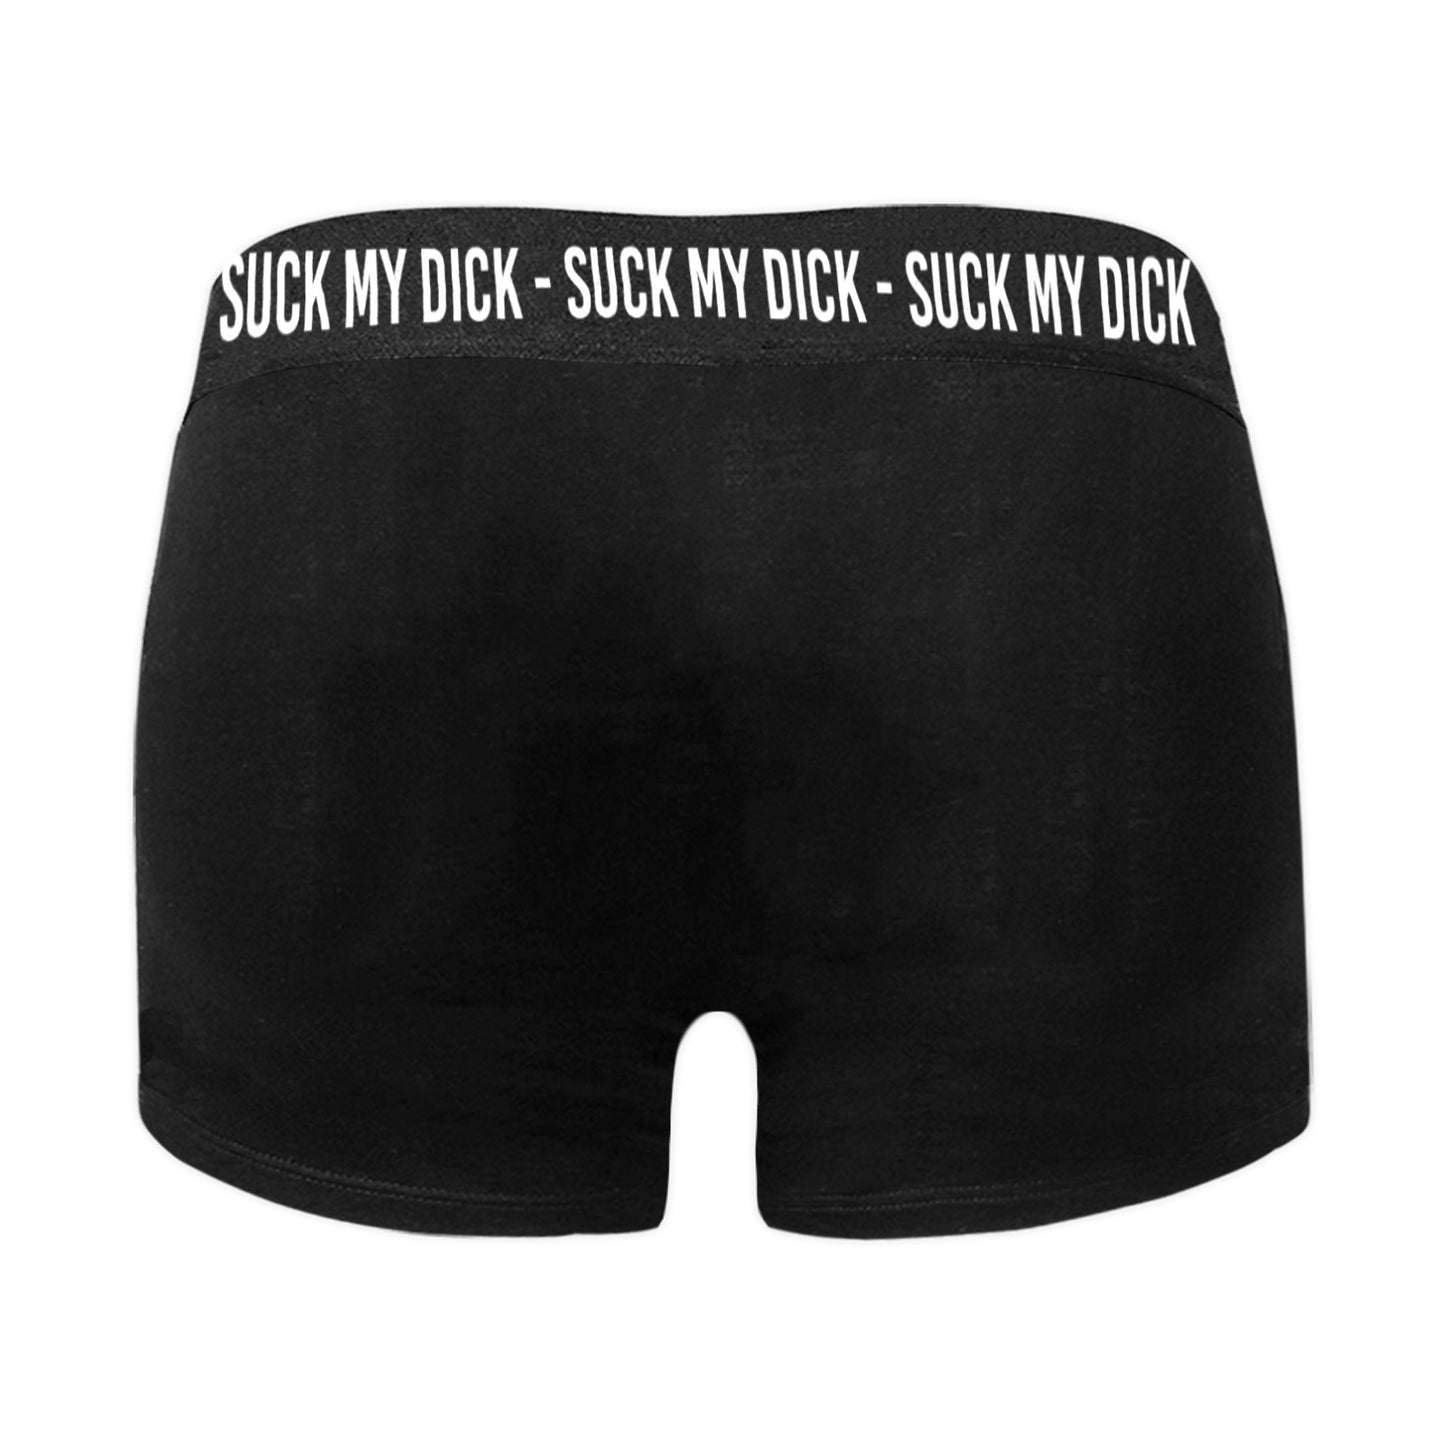 sexy men's underwear mens underwear boxer briefs suck my dick underwear 